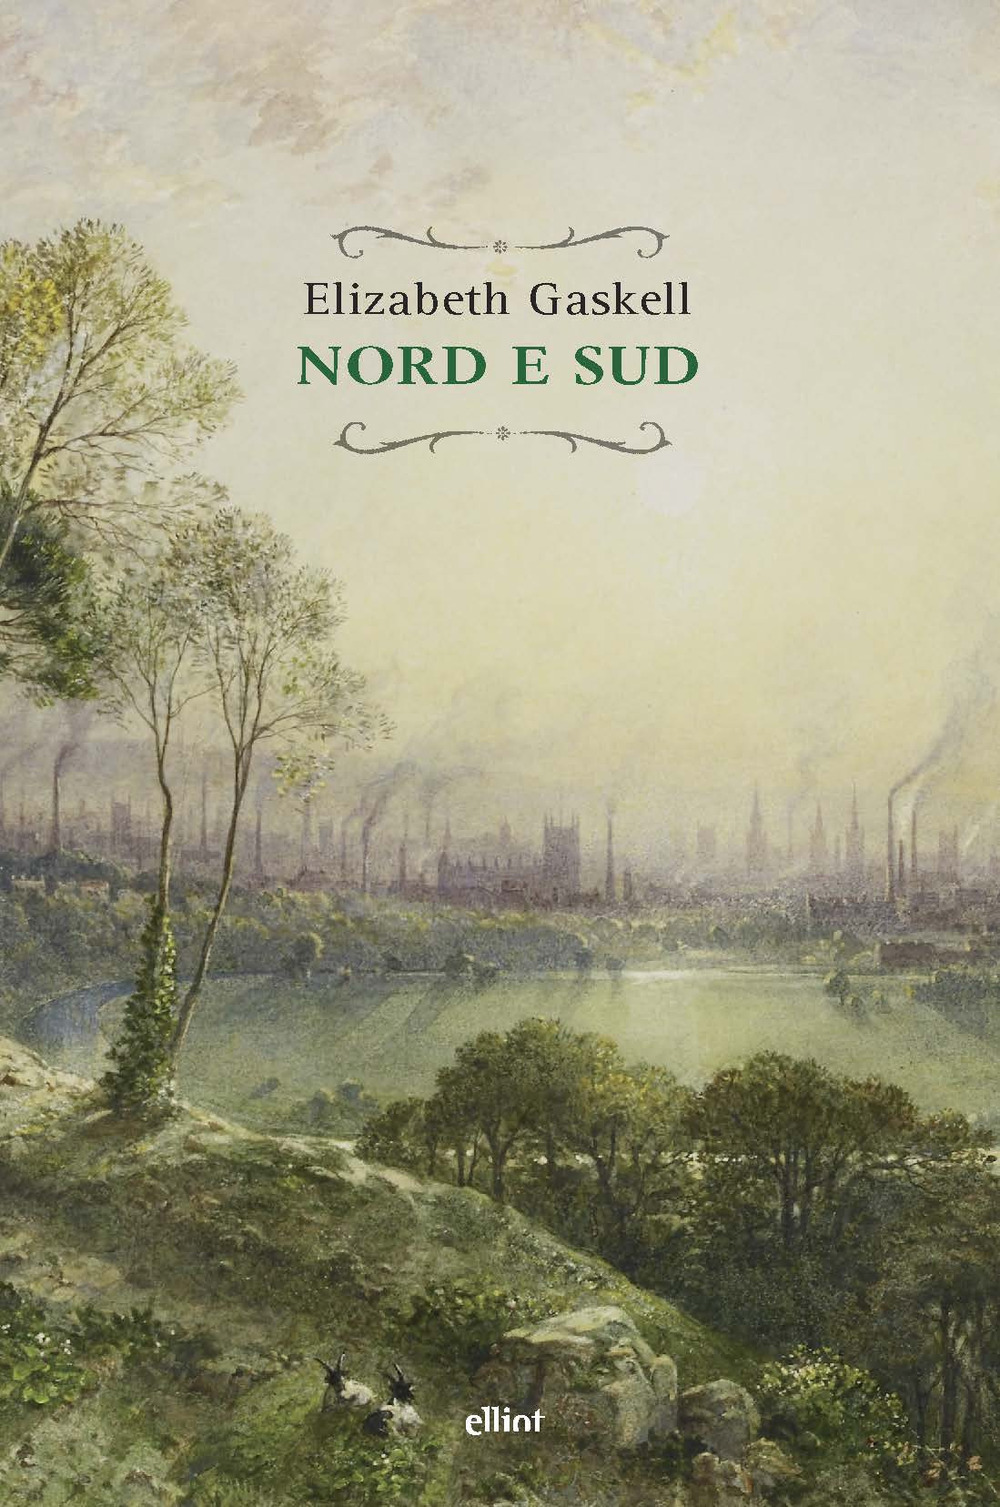 Libri Elizabeth Gaskell - Nord E Sud NUOVO SIGILLATO, EDIZIONE DEL 22/11/2019 SUBITO DISPONIBILE